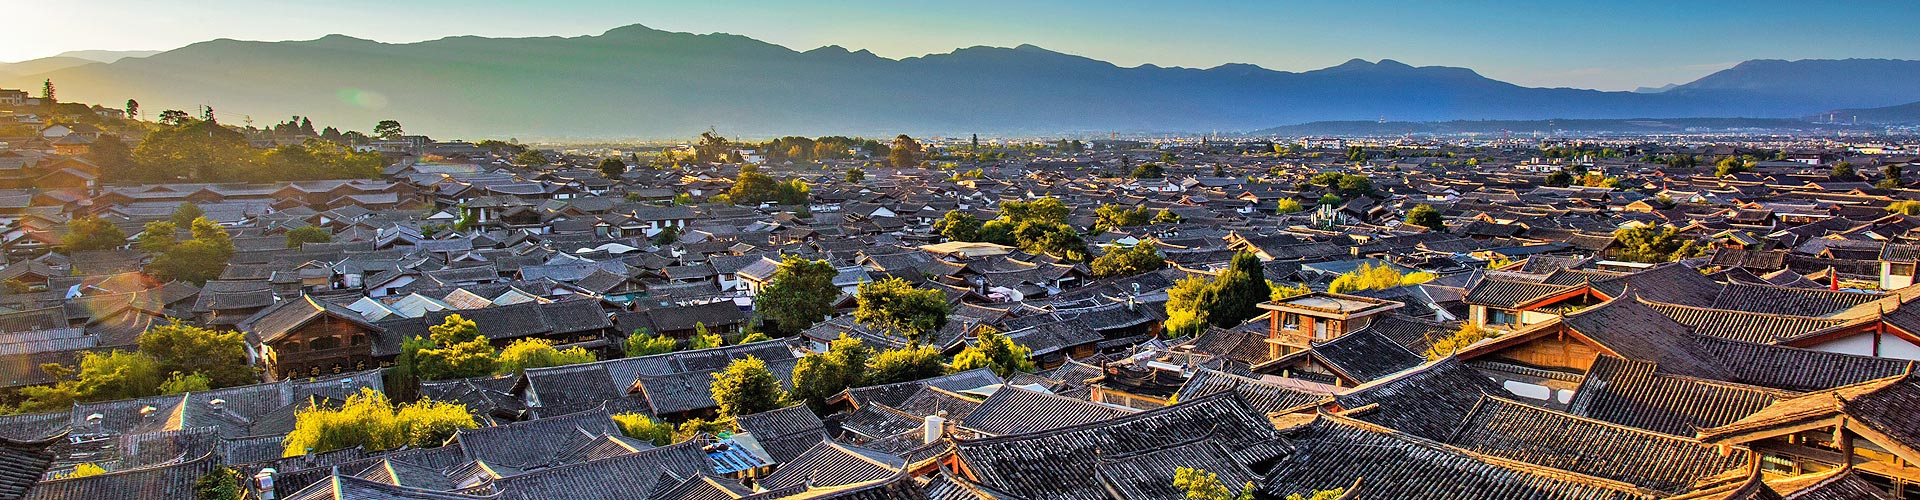 Lijiang Ancient Town Tour